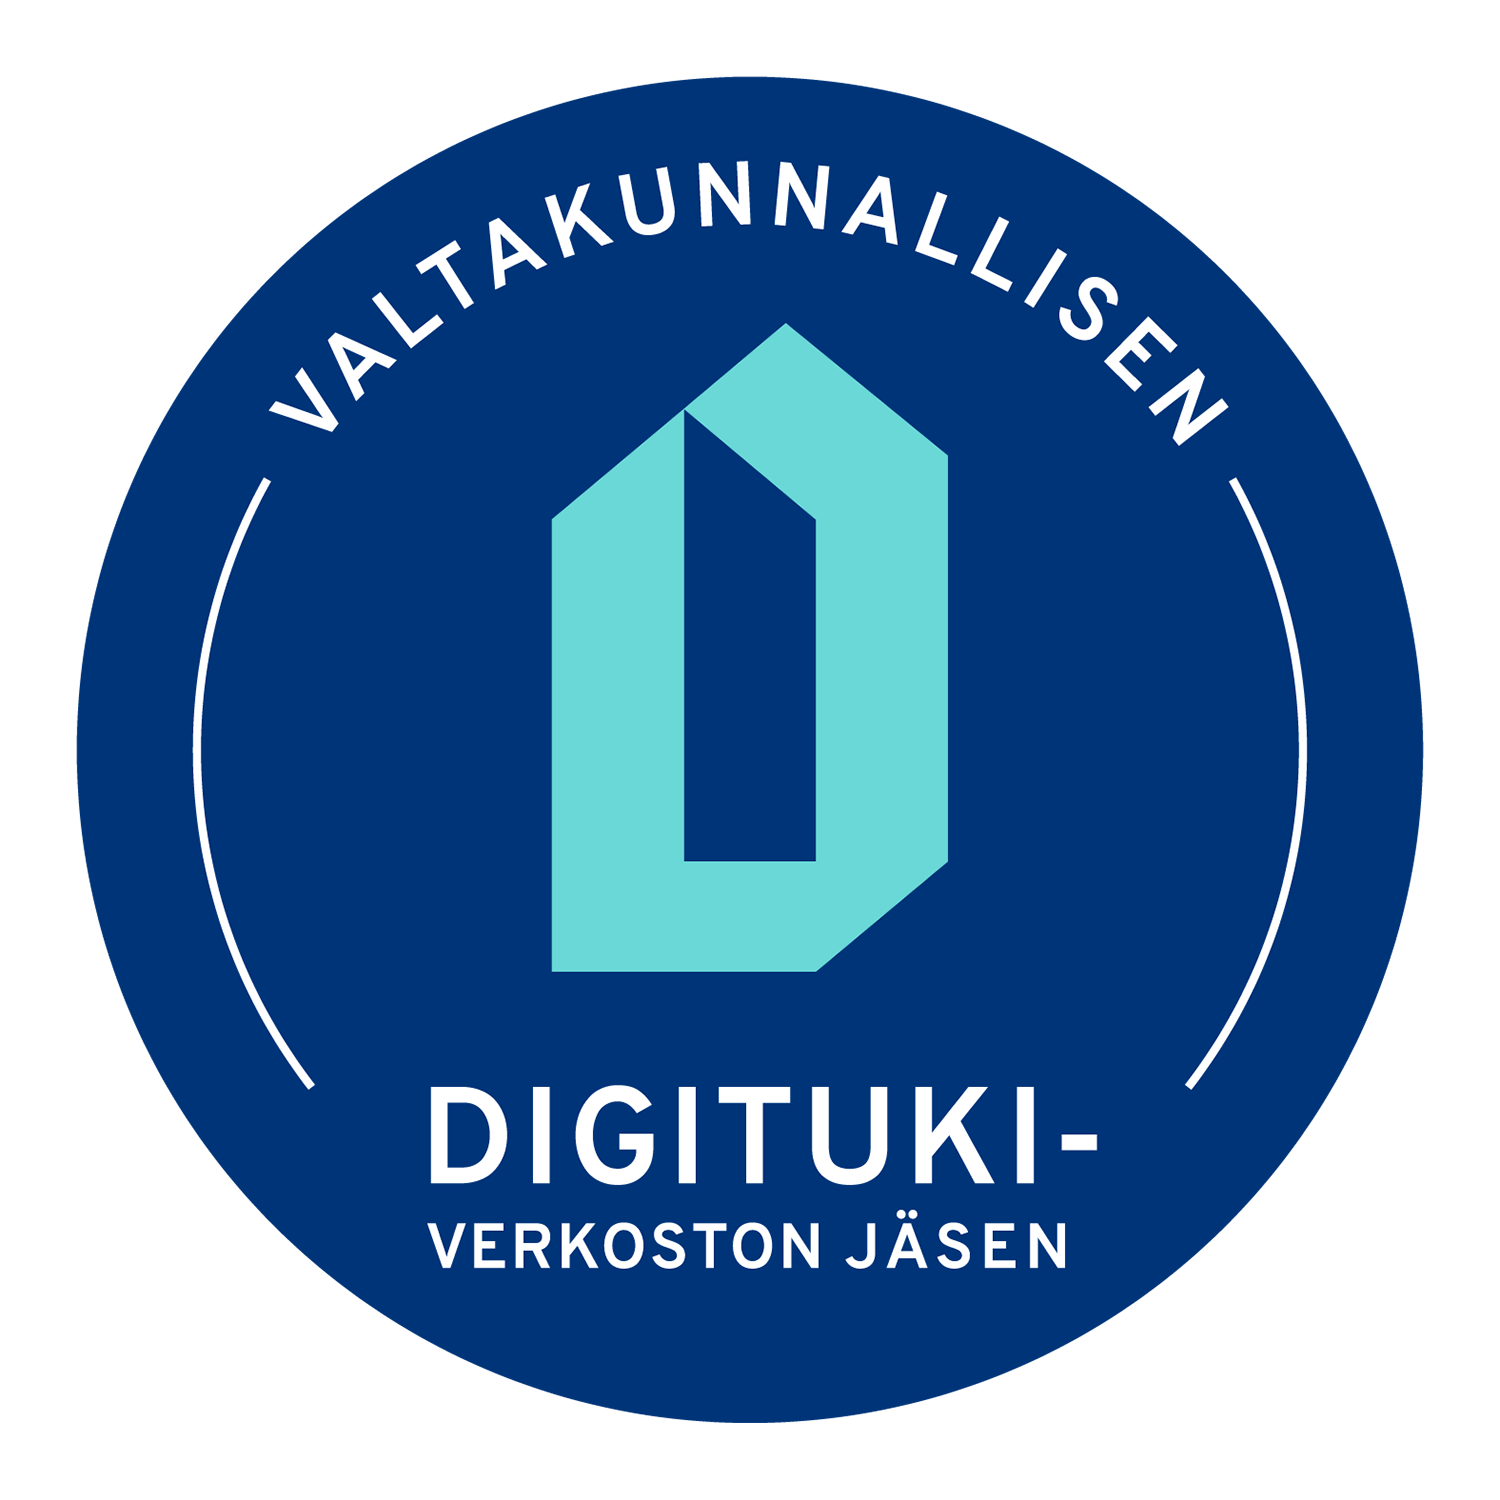 Valtakunnallisen digitukiverkoston jäsen -logo